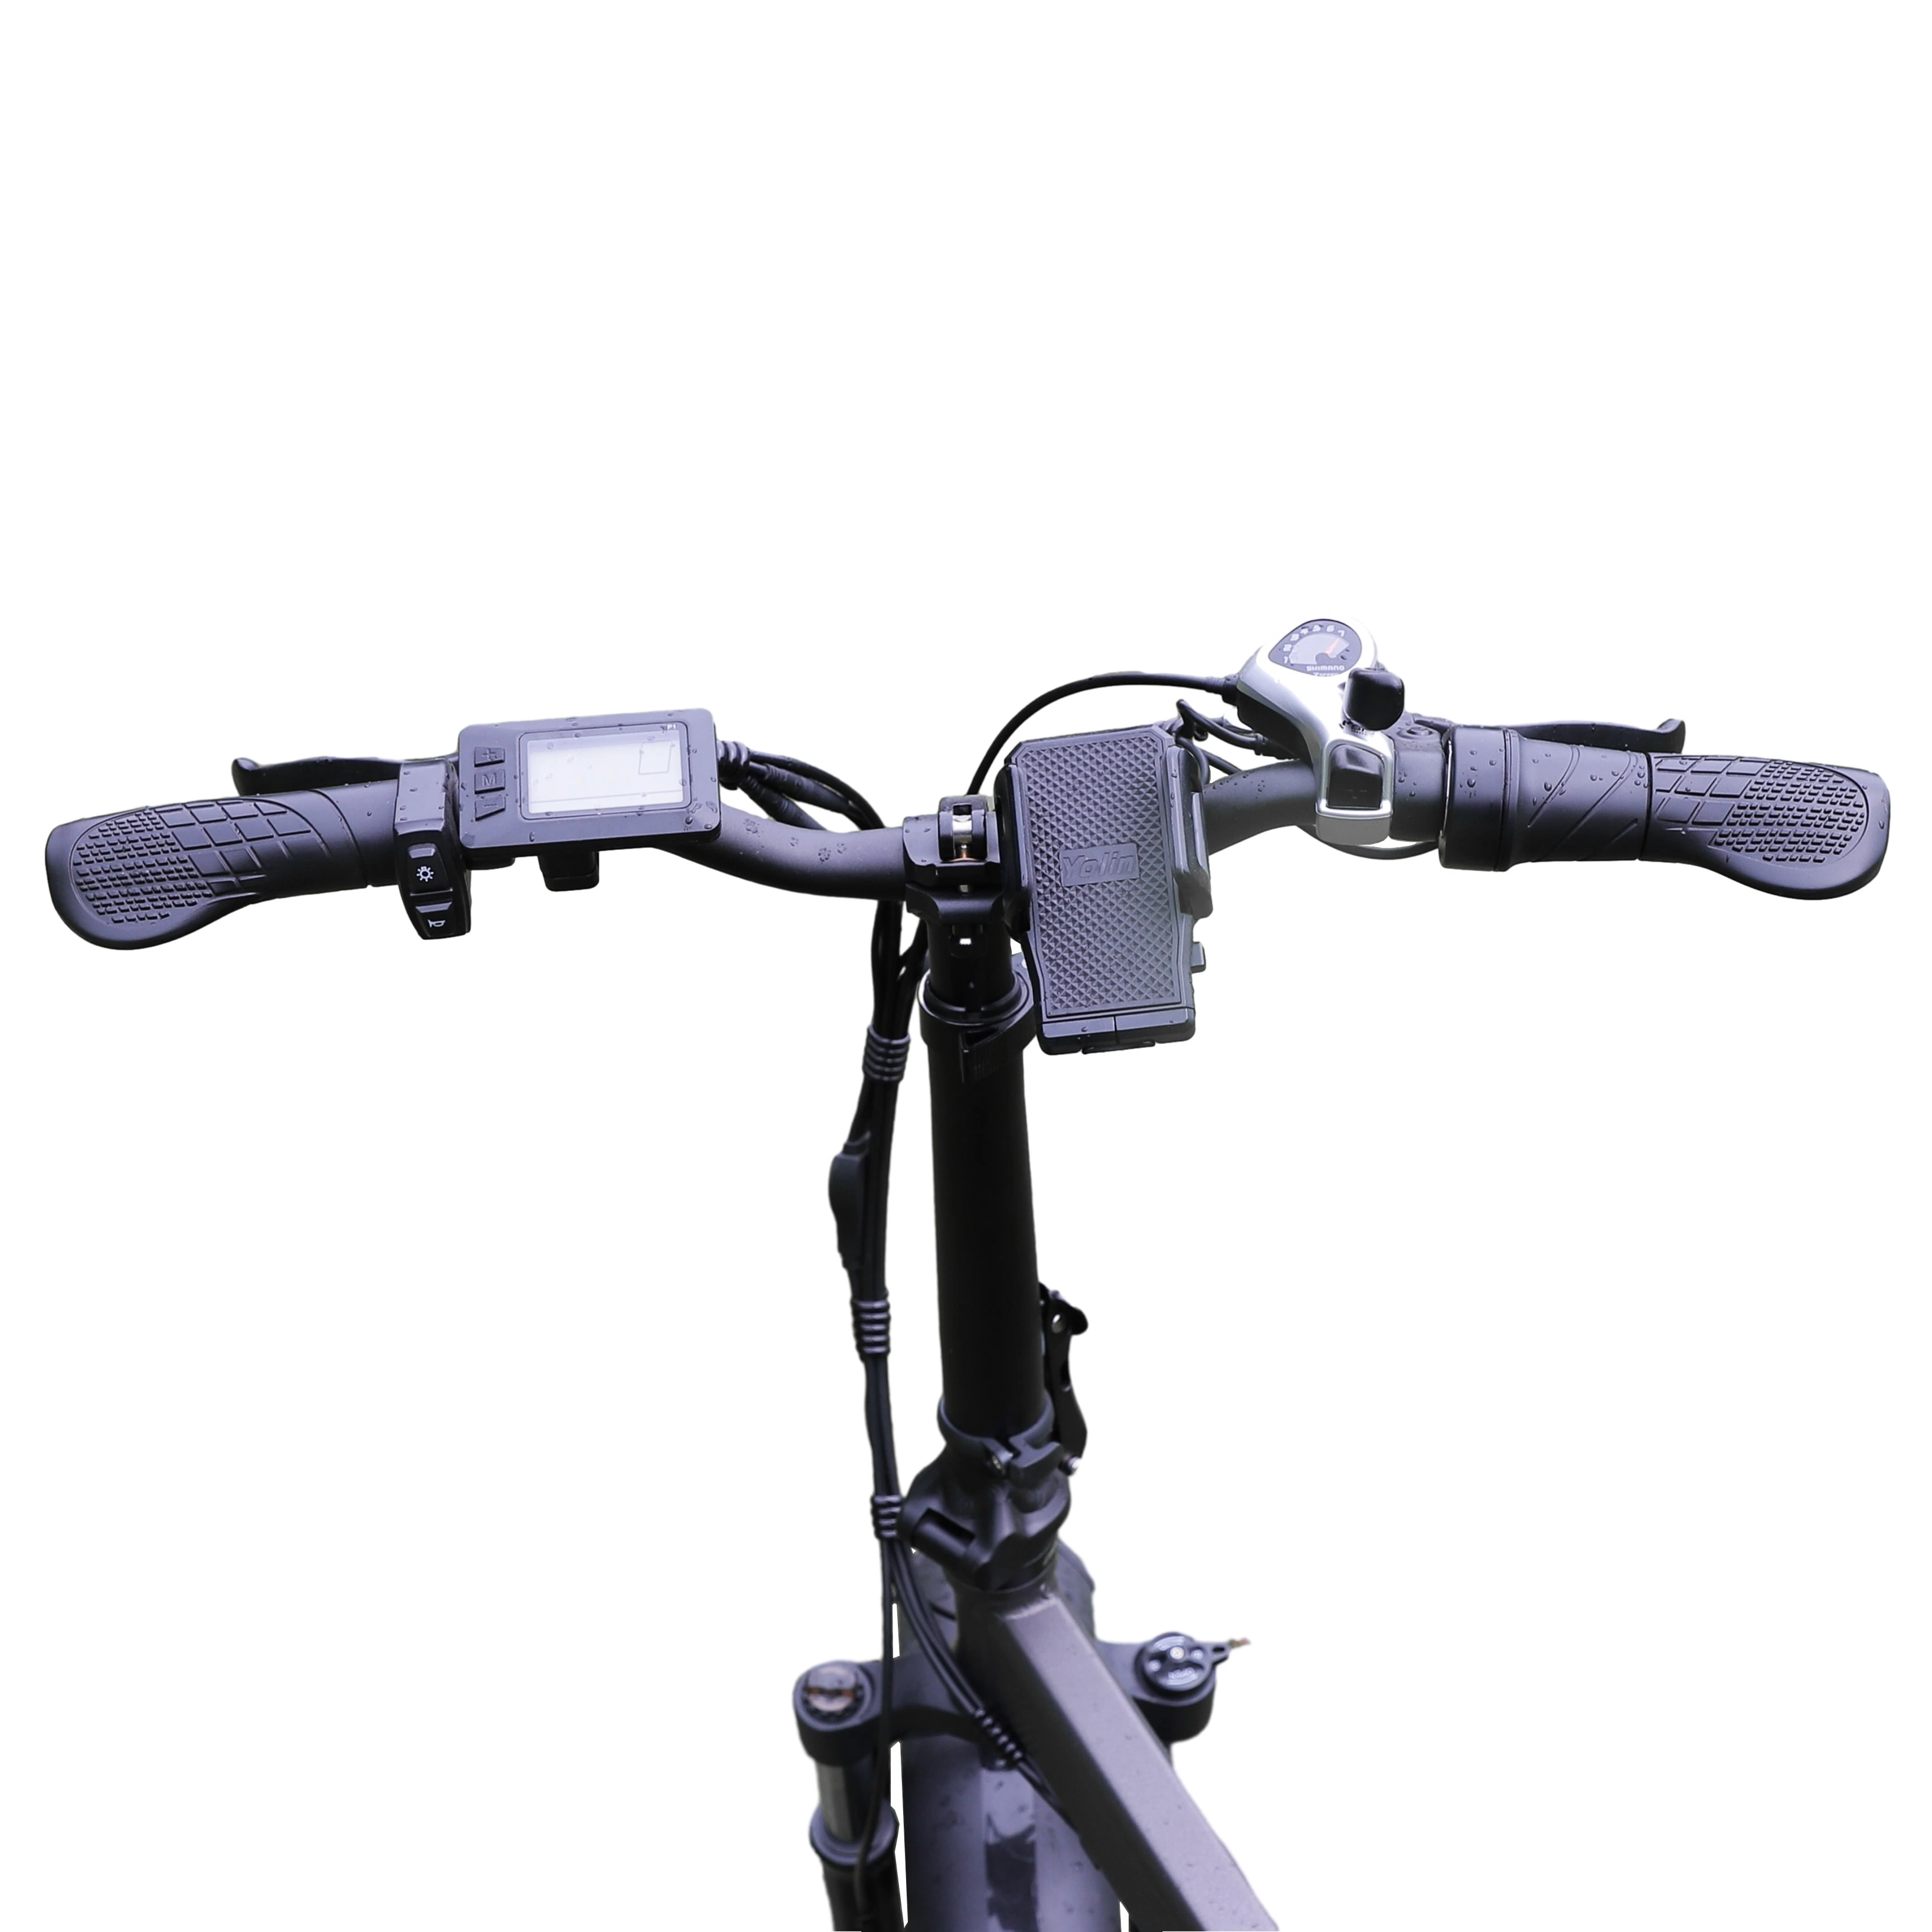 جوركراد طيّ دراجة كهربائية الجبال دراجة دراجة دراجة دراجة دراجة دراجة دراجة نارية دراجة [أدم]/[أOEM] داخل دراجة نارية الأسهم